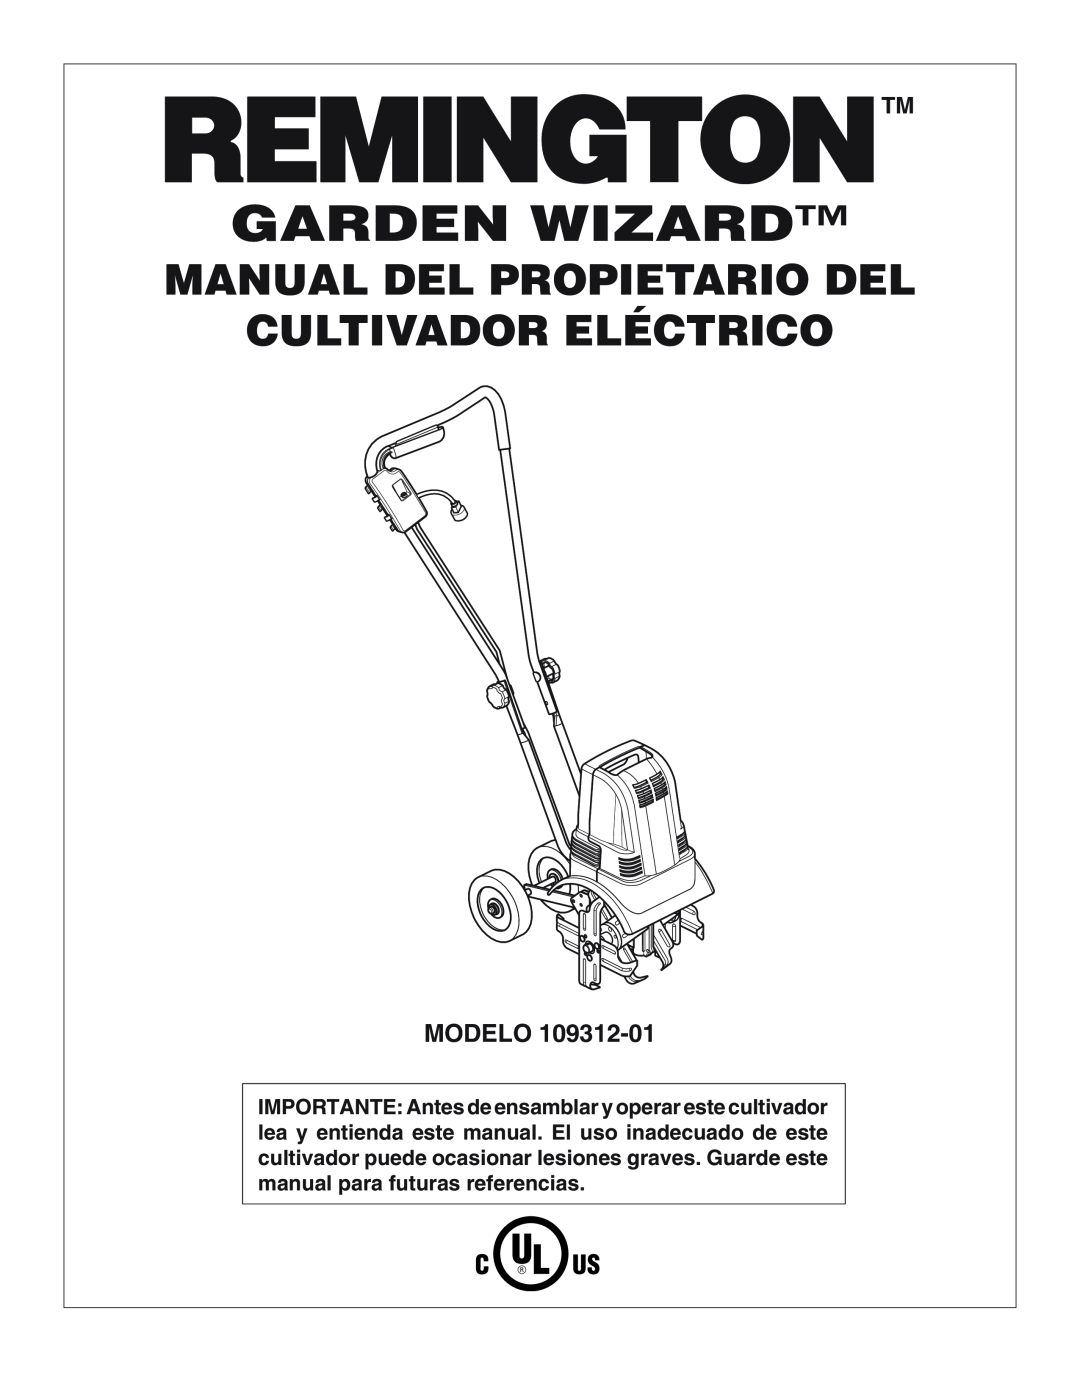 Remington 109312-01 owner manual Garden Wizard, Manual Del Propietario Del Cultivador Eléctrico, Modelo 